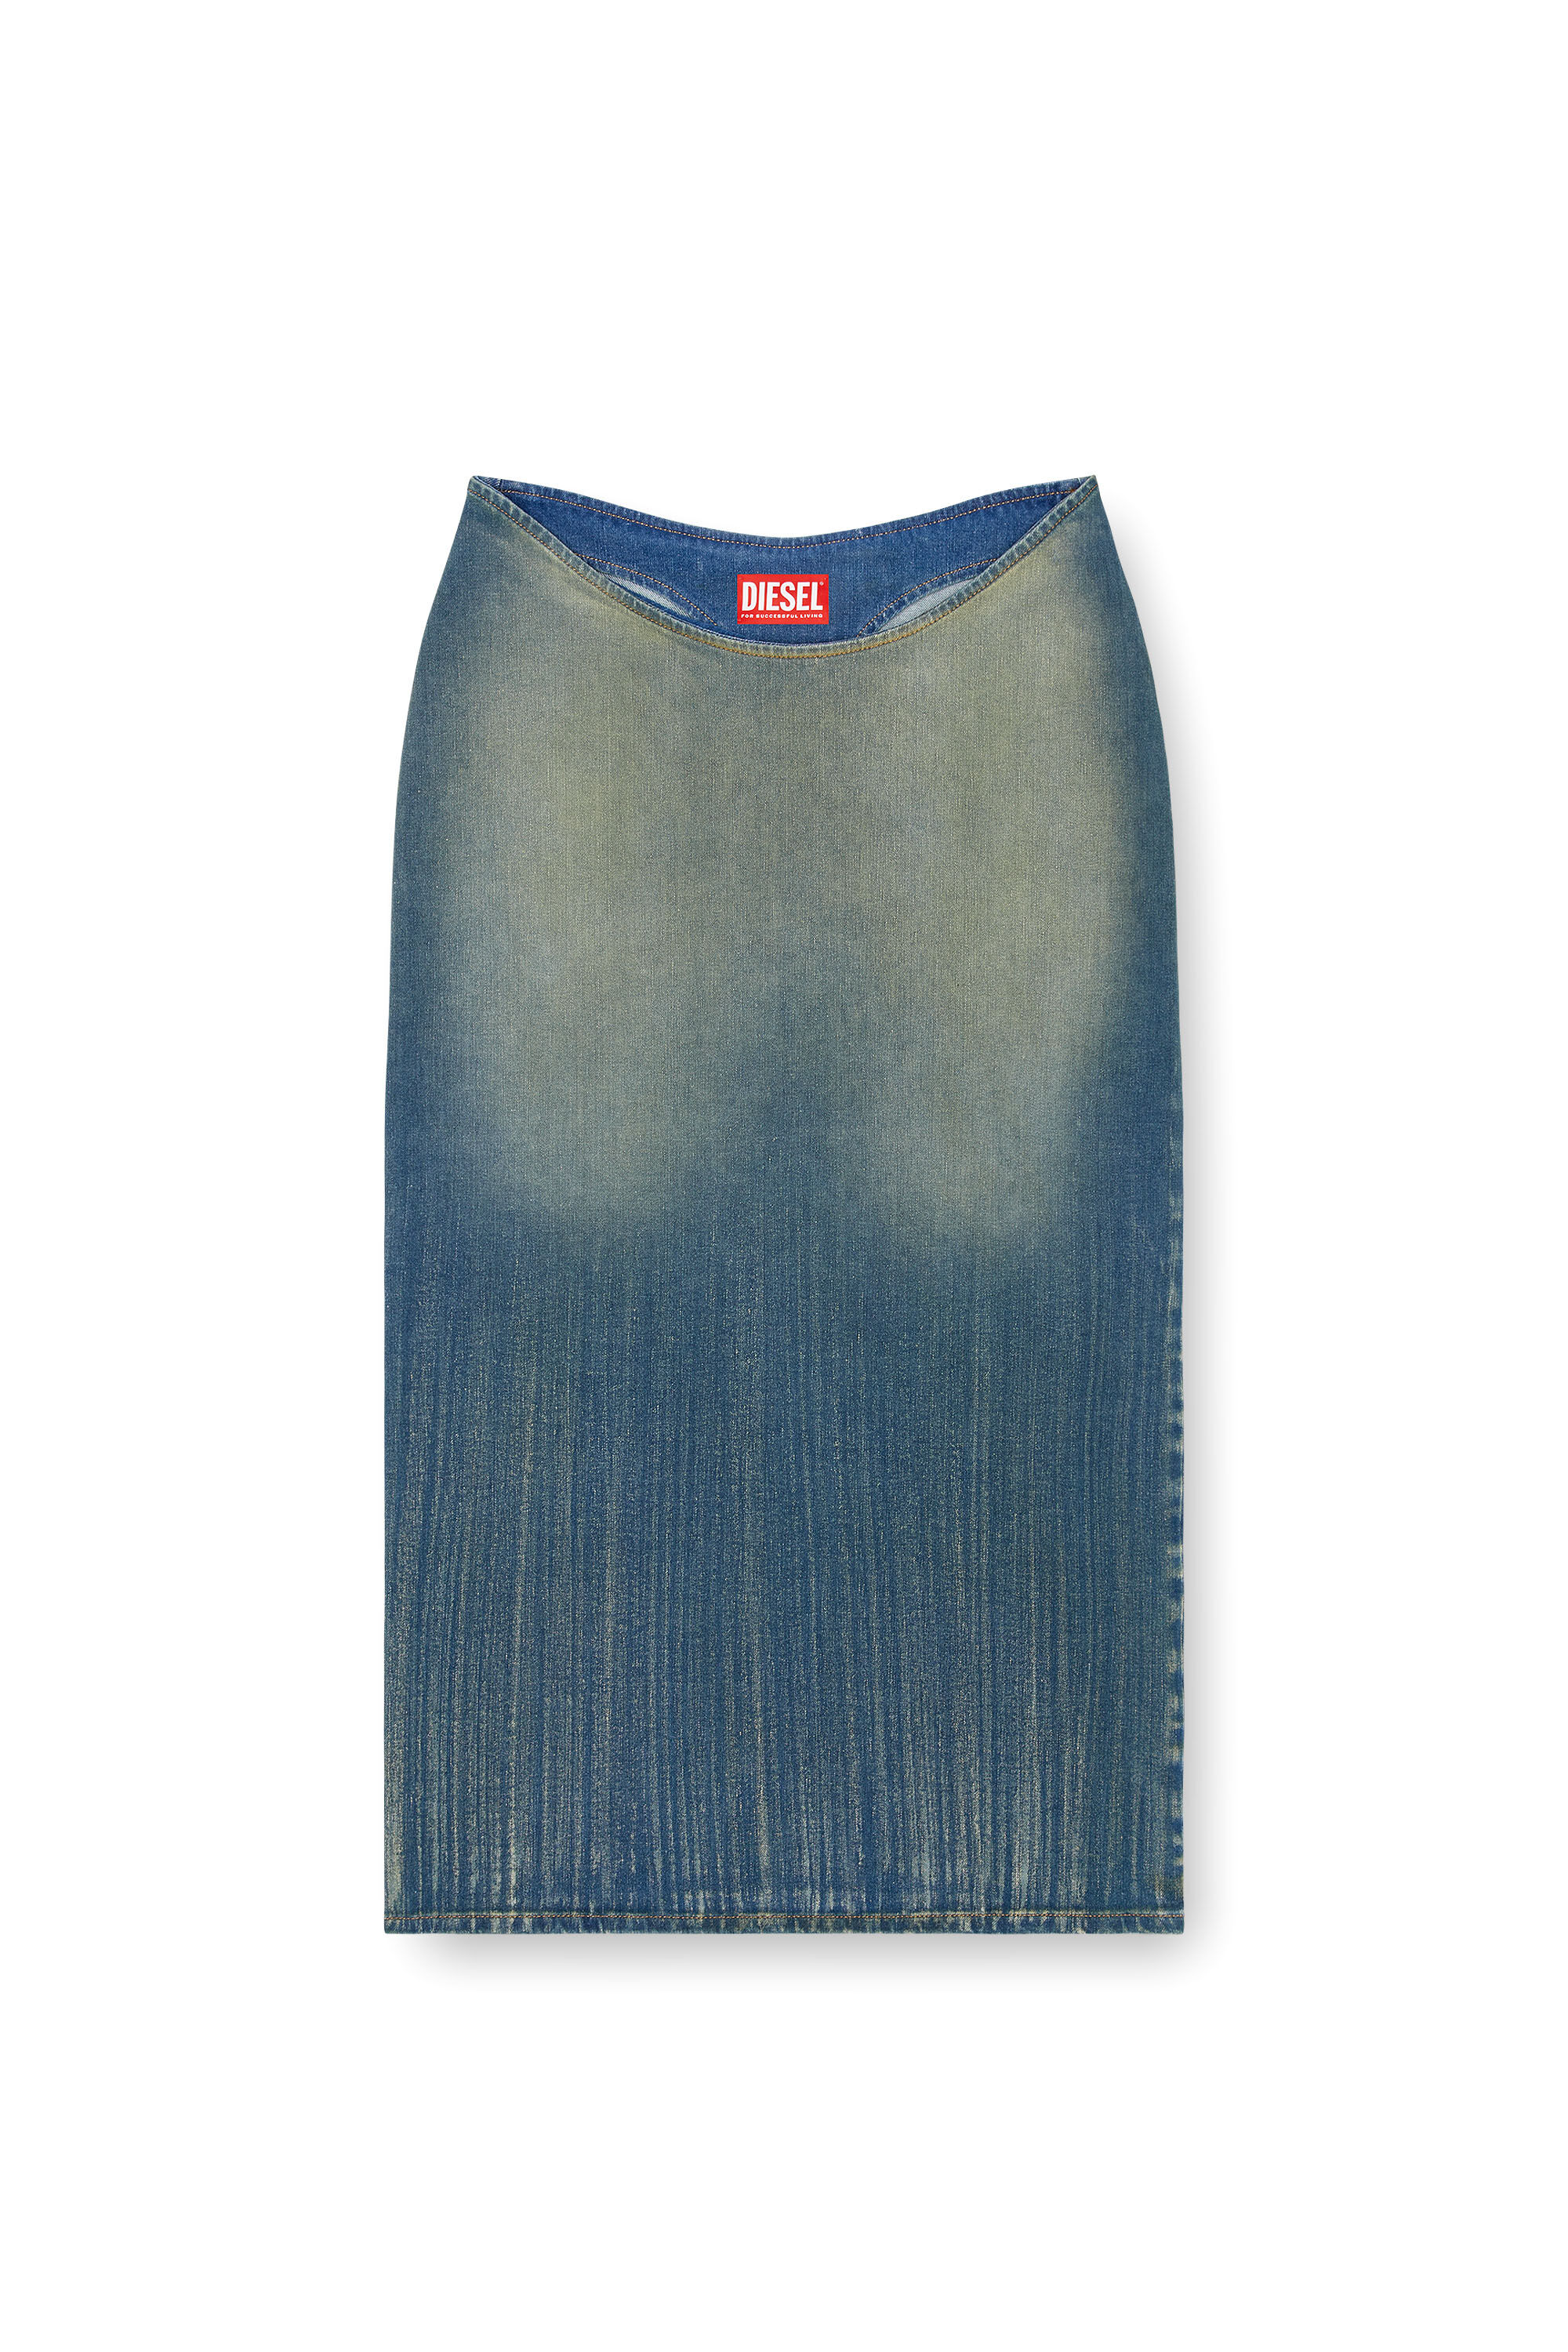 Diesel - DE-MAURY-S, Woman Pencil skirt in light streaky denim in Blue - Image 2